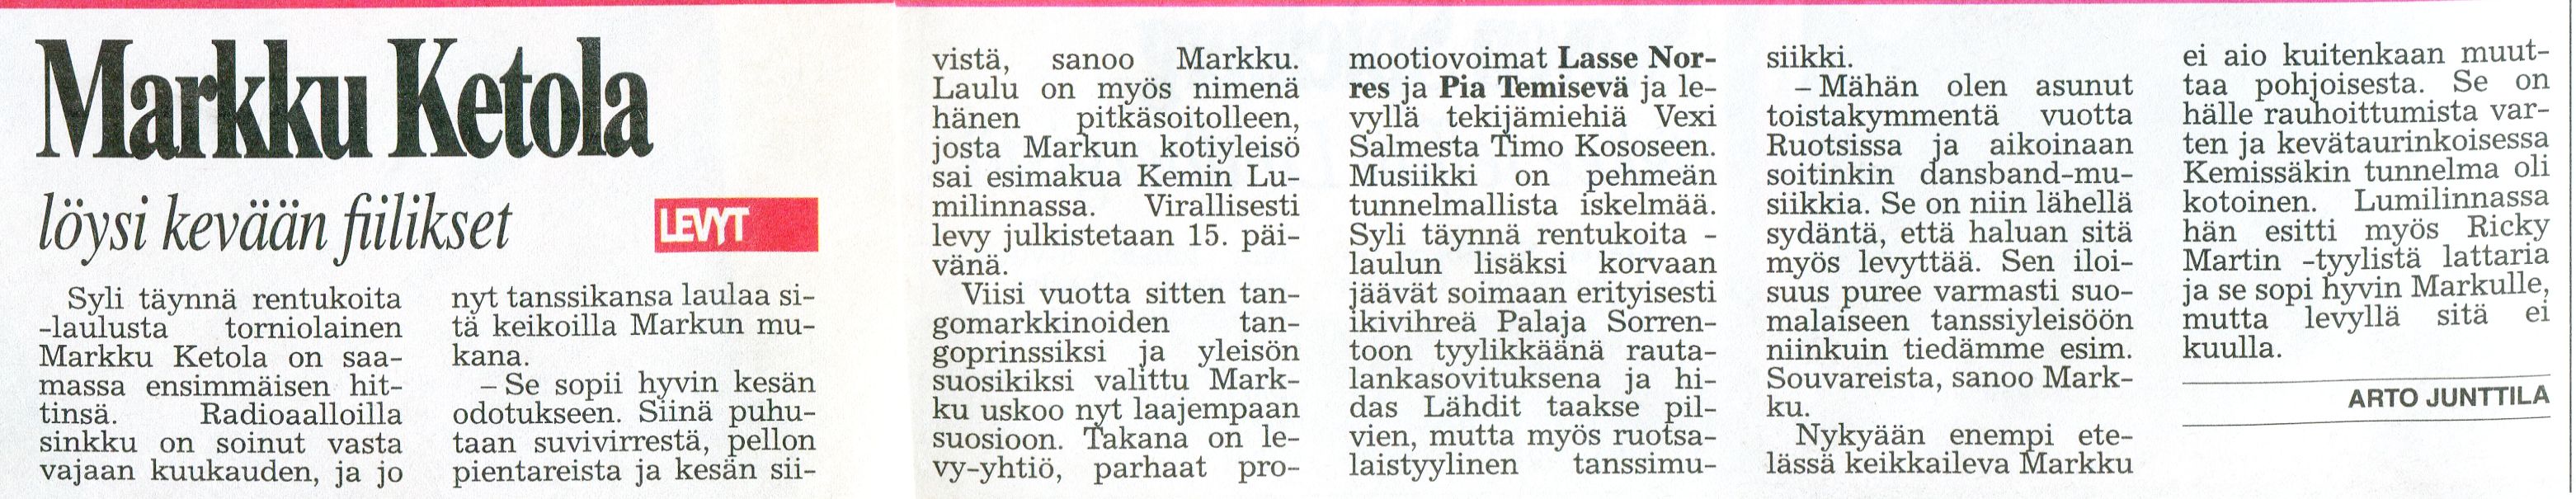 MarkkuKetola06041998